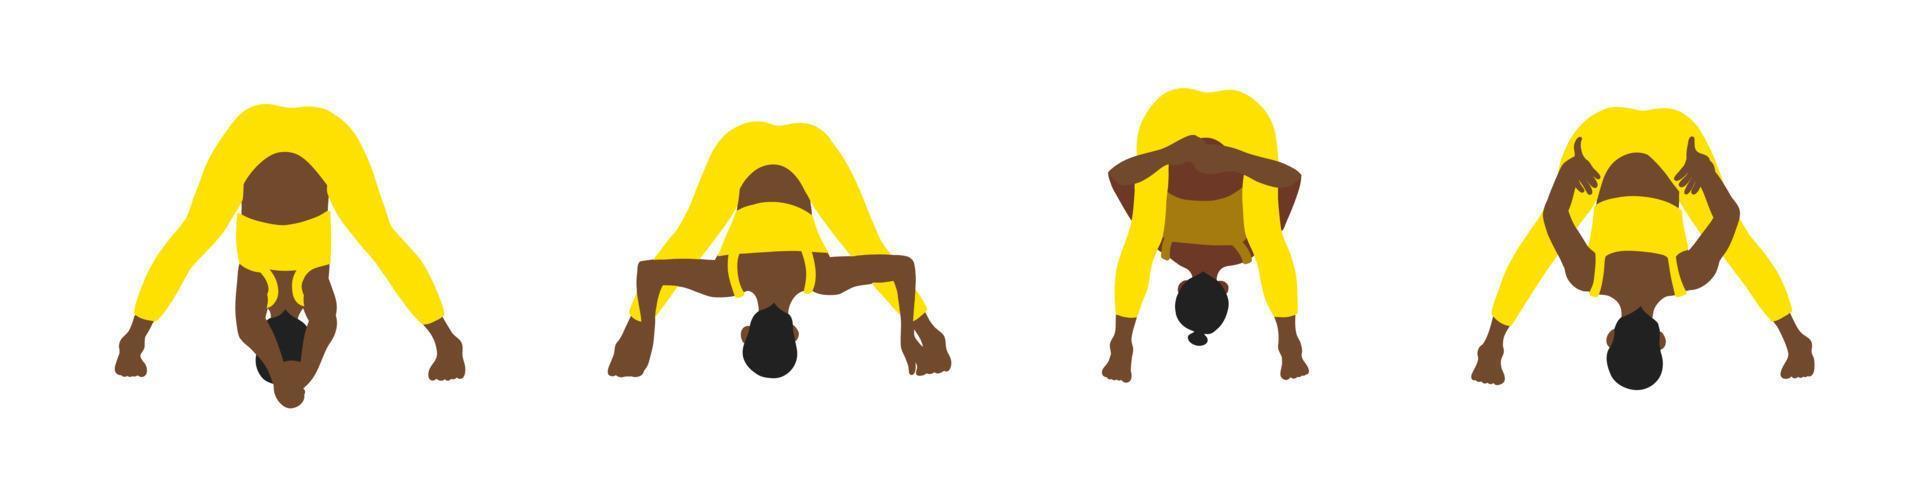 yoga poser samling. afrikansk amerikansk. kvinna kvinna flicka. vektor illustration i tecknad serie platt stil isolerat på vit bakgrund.